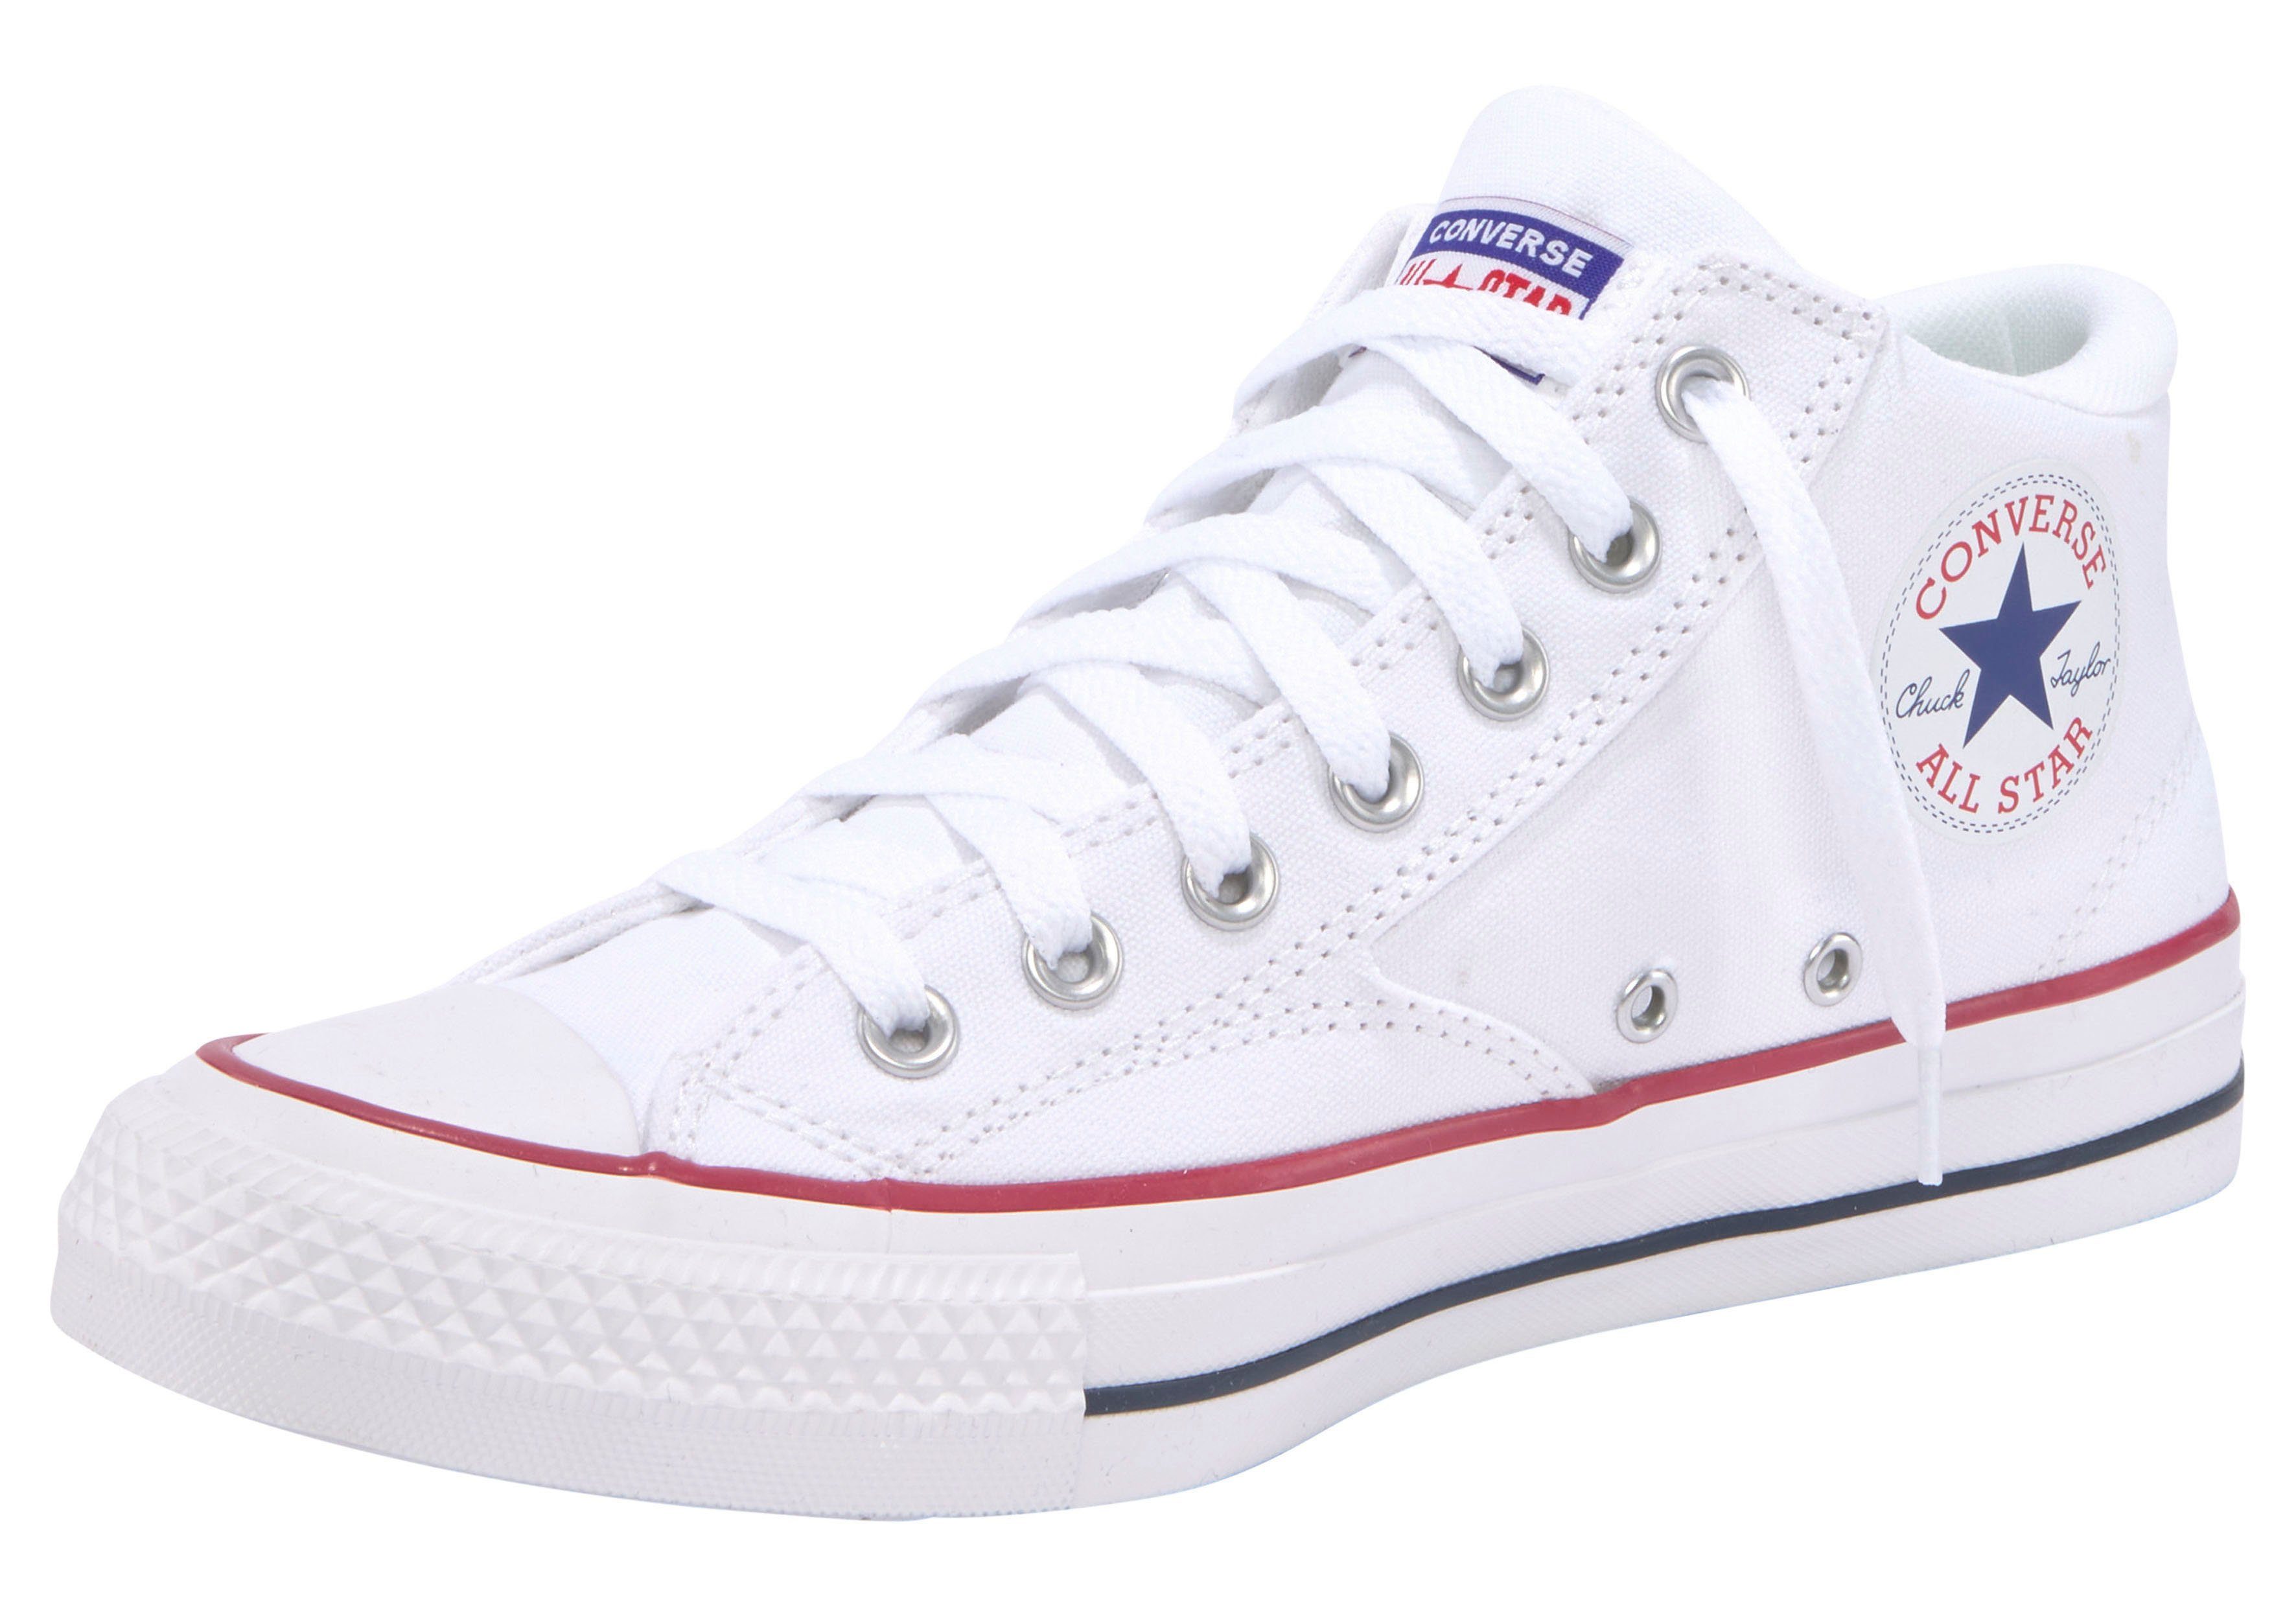 Converse CHUCK TAYLOR ALL STAR MALDEN STREET Sneaker, Fällt groß aus, bitte  eine Größe kleiner bestellen